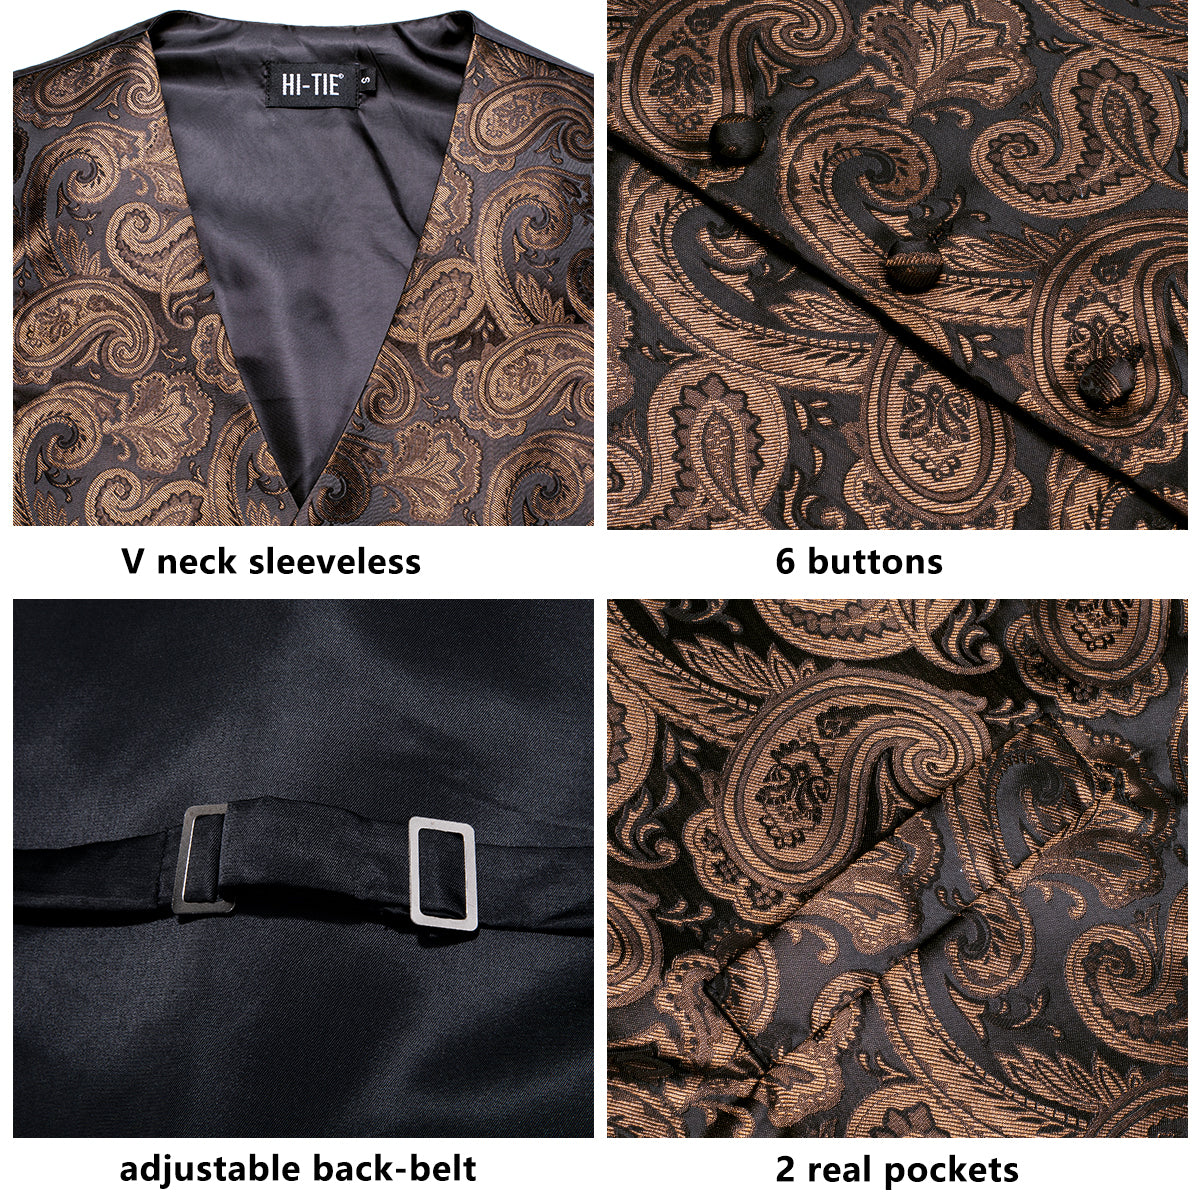 Luxury Brown Black Paisley Silk Men's Vest Hanky Cufflinks Tie Set Waistcoat Suit Set